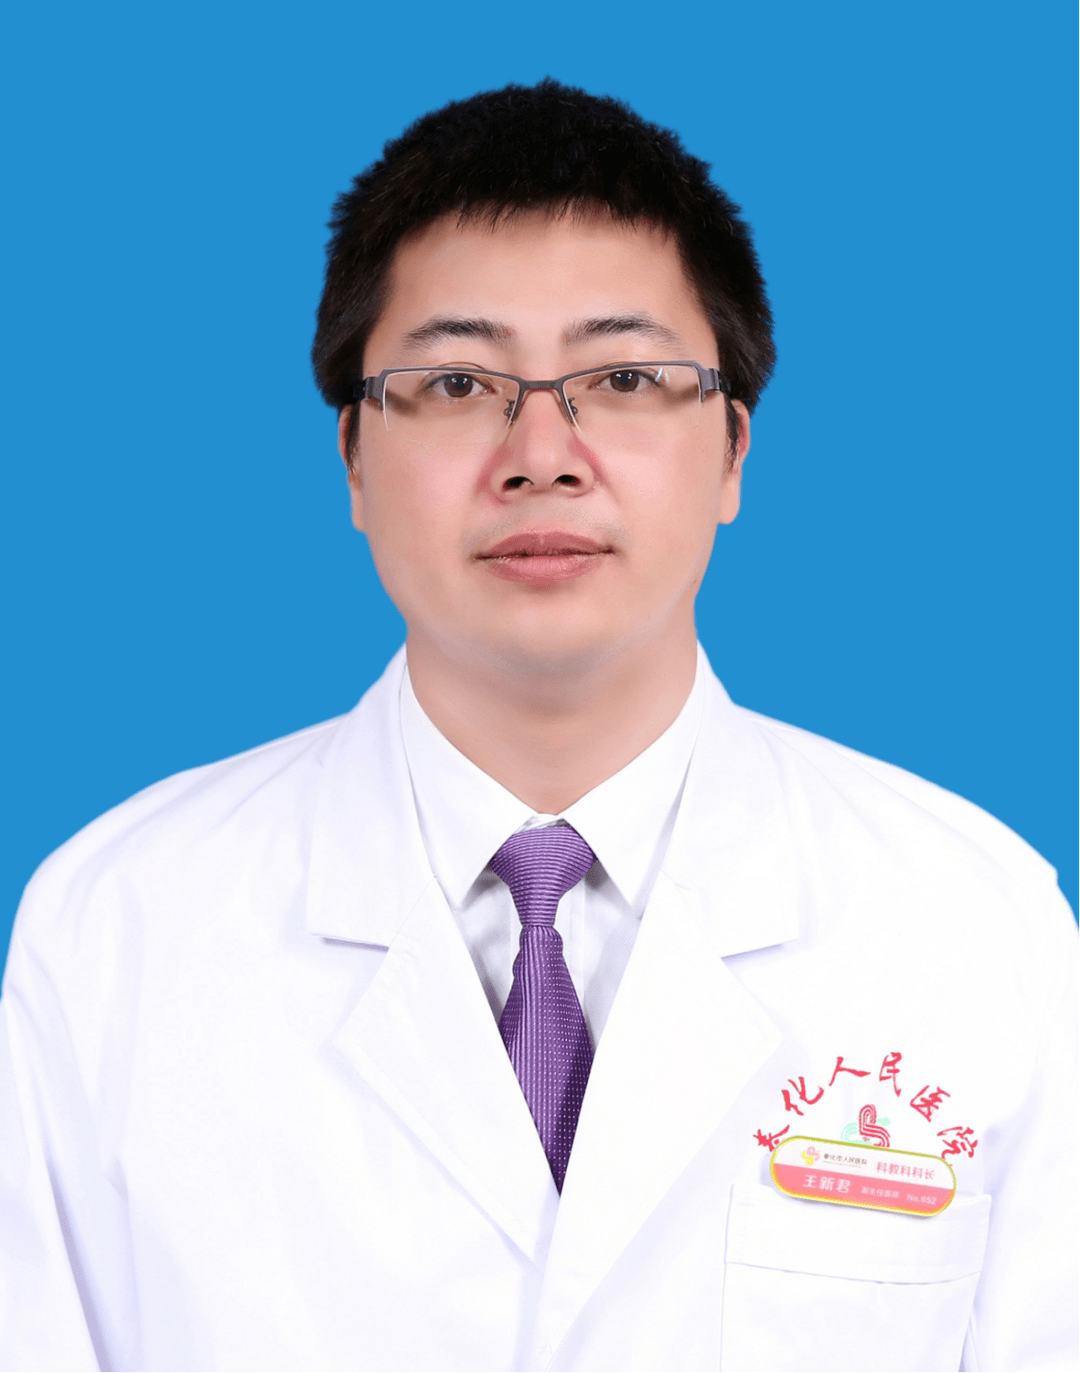 王新君,皮肤科主任医师,中共党员宁波市领军与拔尖人才,2005年毕业于